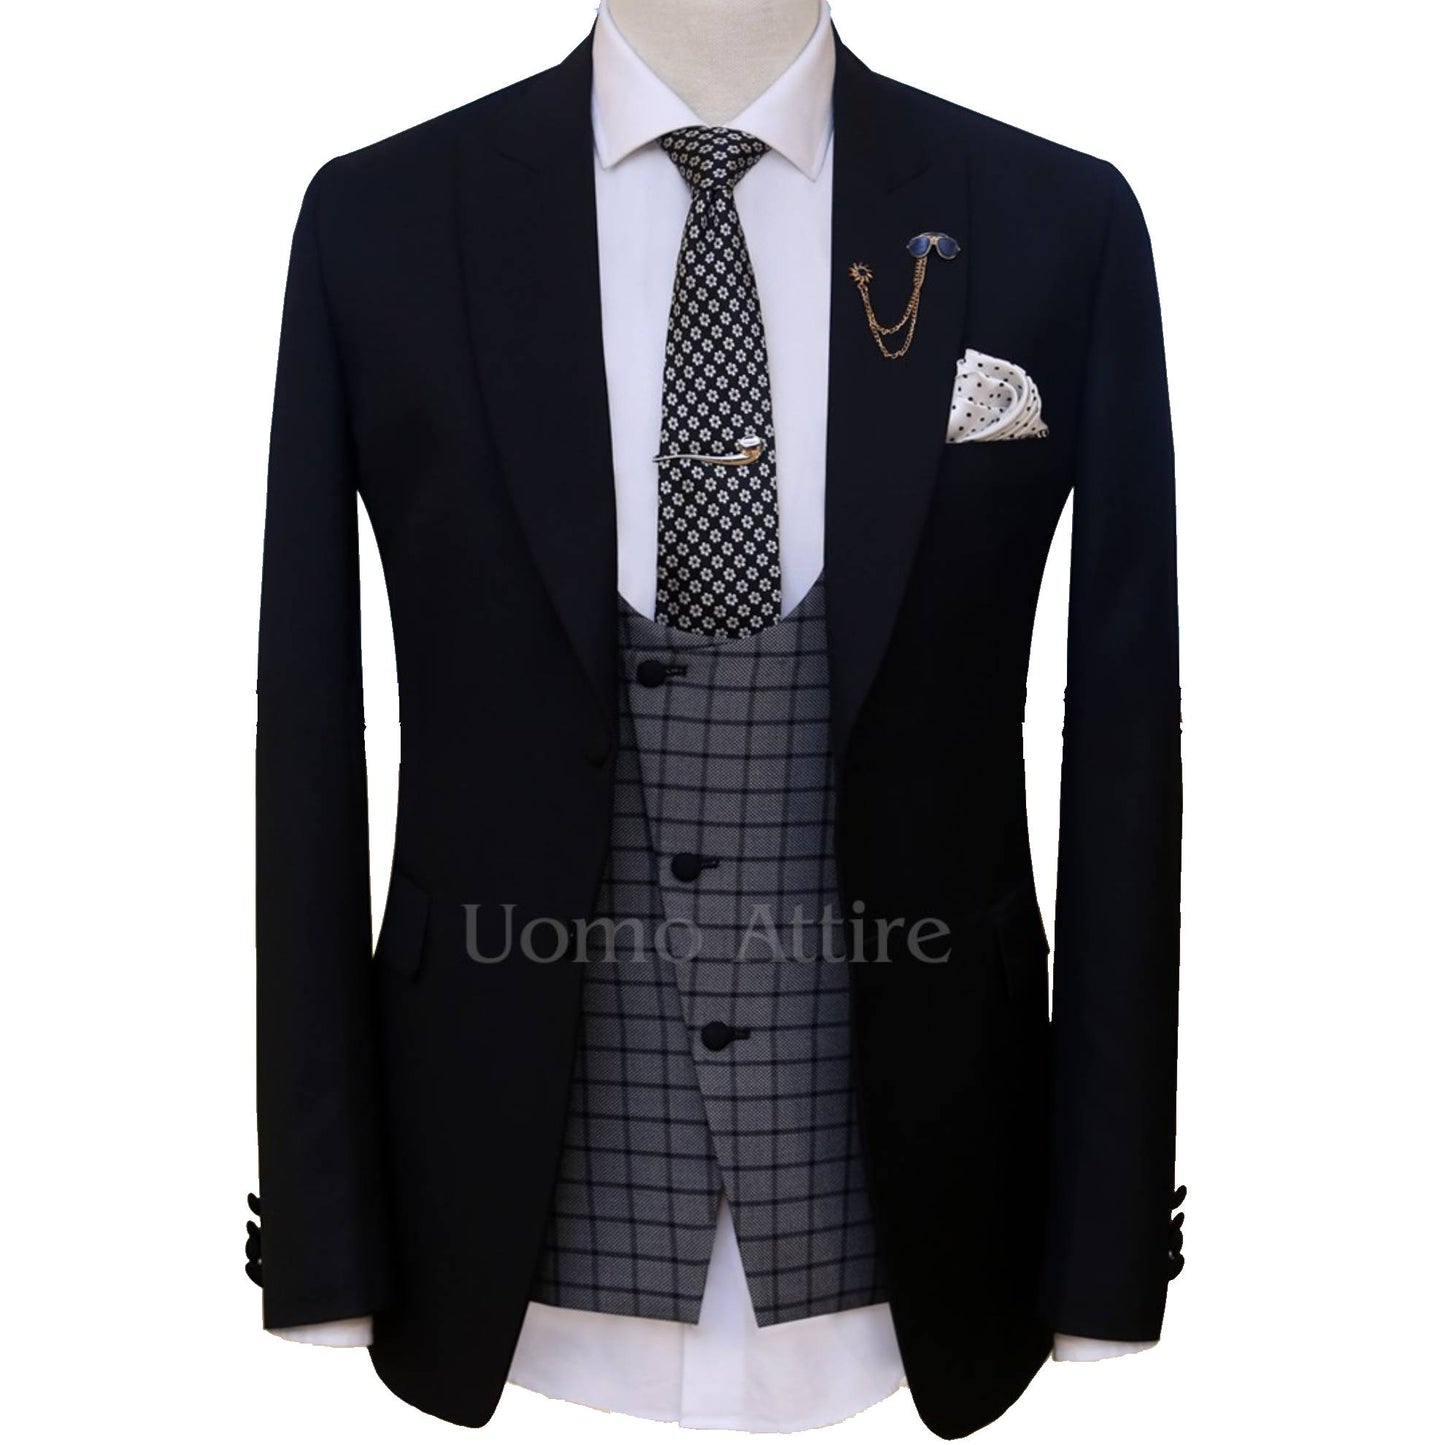 Black contrast three piece suit for wedding – Uomo Attire